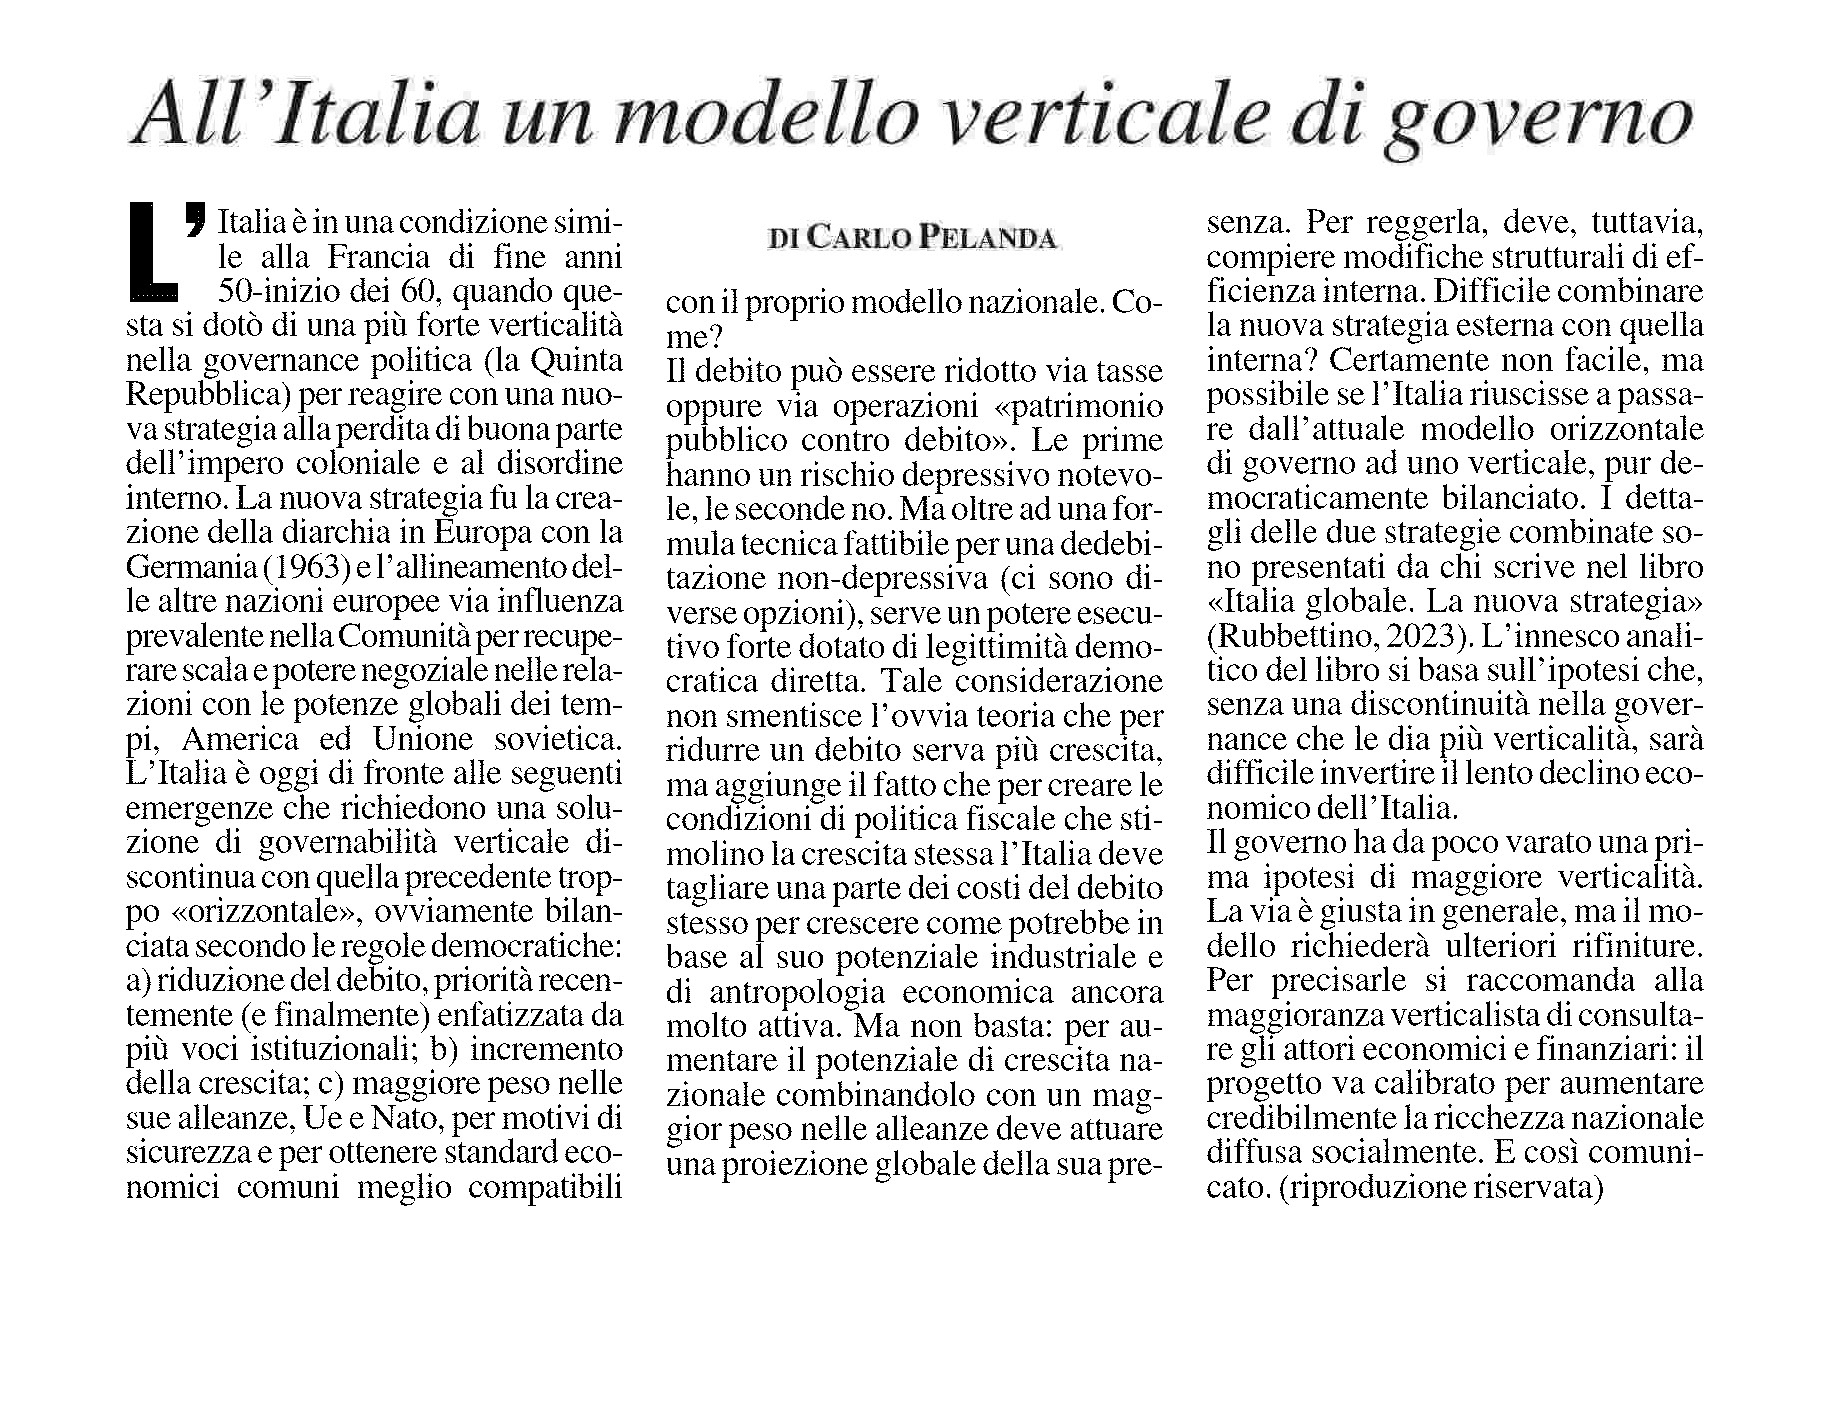 2-11-2023- All-Italia-un-modello-verticale-di-governo